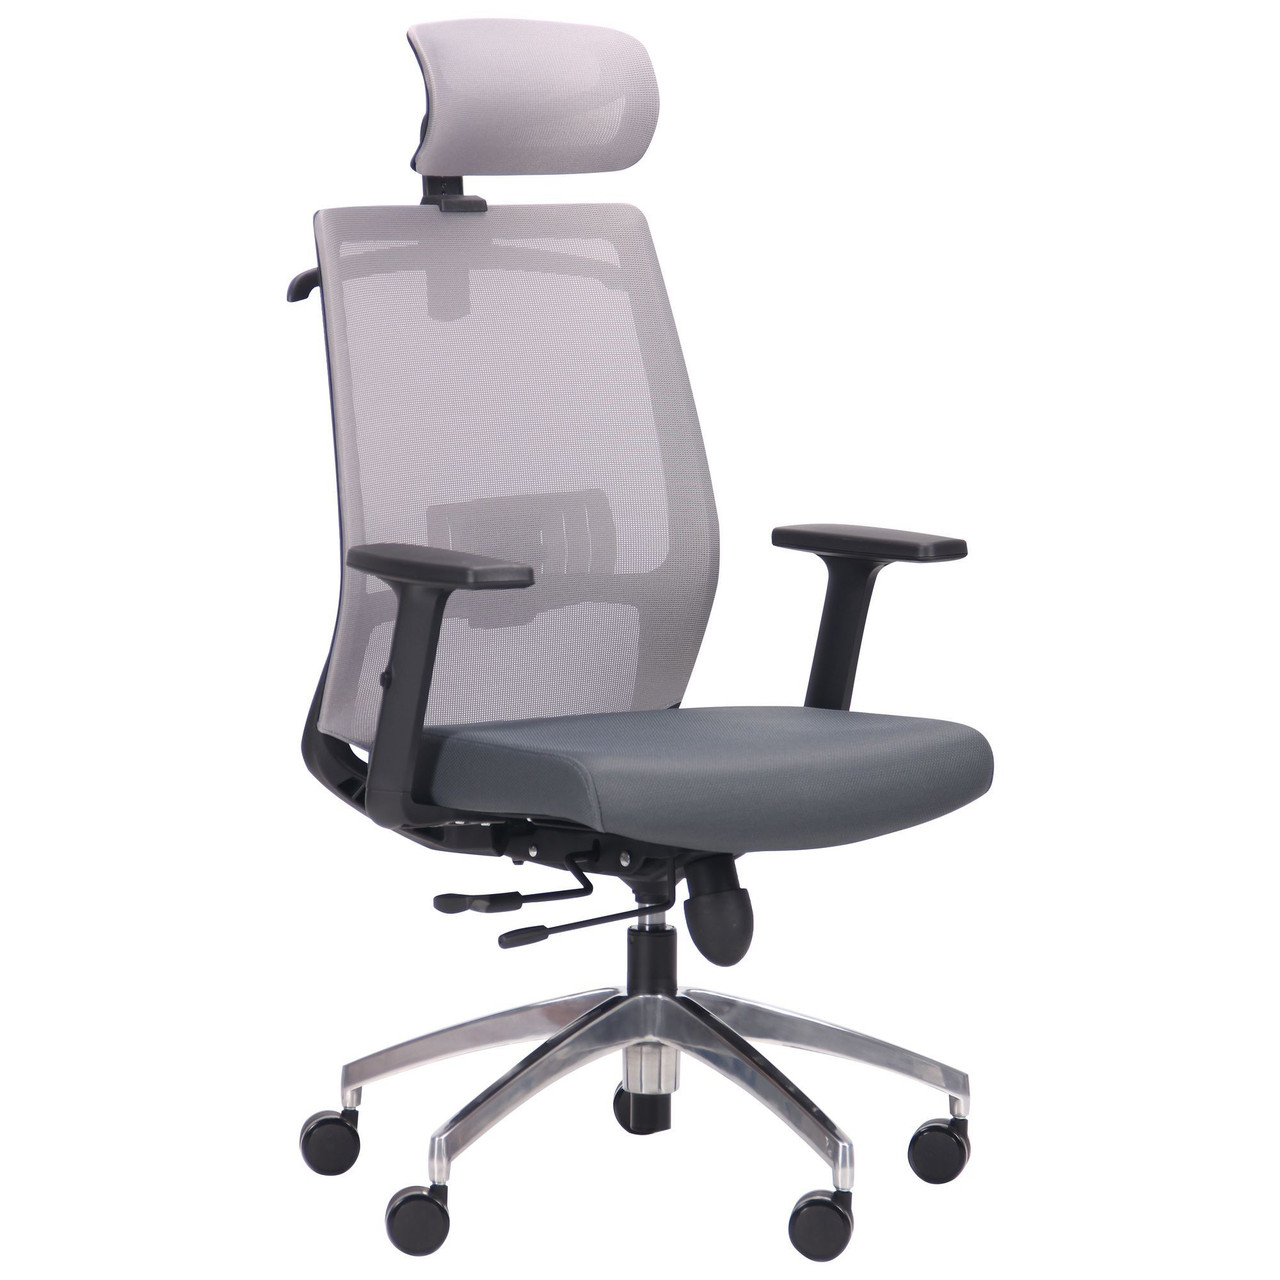 Компьютерное кресло Install Black, Alum, TM AMF Grey/Grey, фото 1